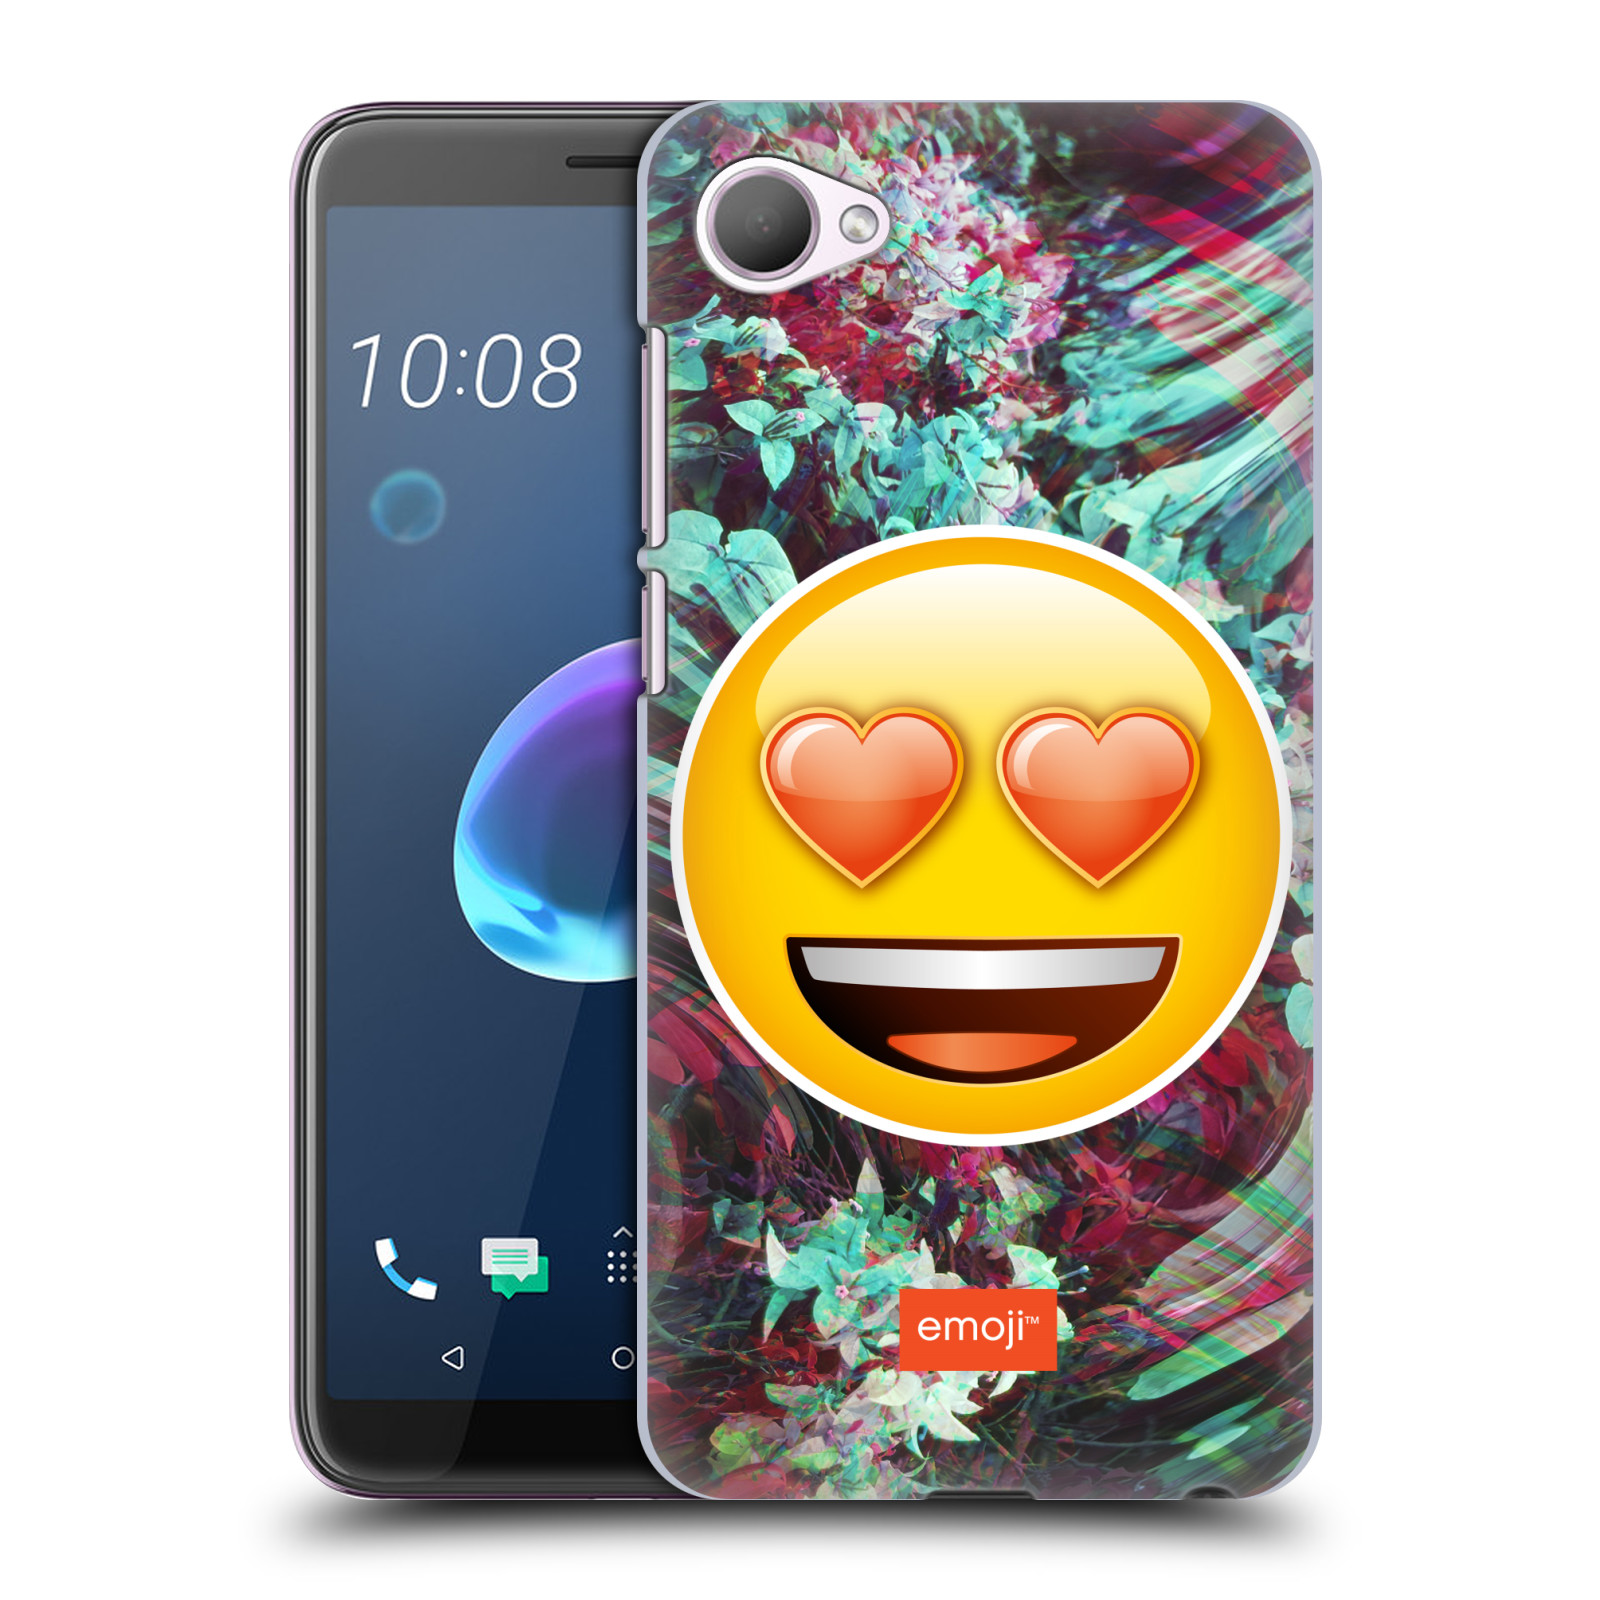 Pouzdro na mobil HTC Desire 12 / Desire 12 DUAL SIM - HEAD CASE - Emoji smajlík srdíčka v očích